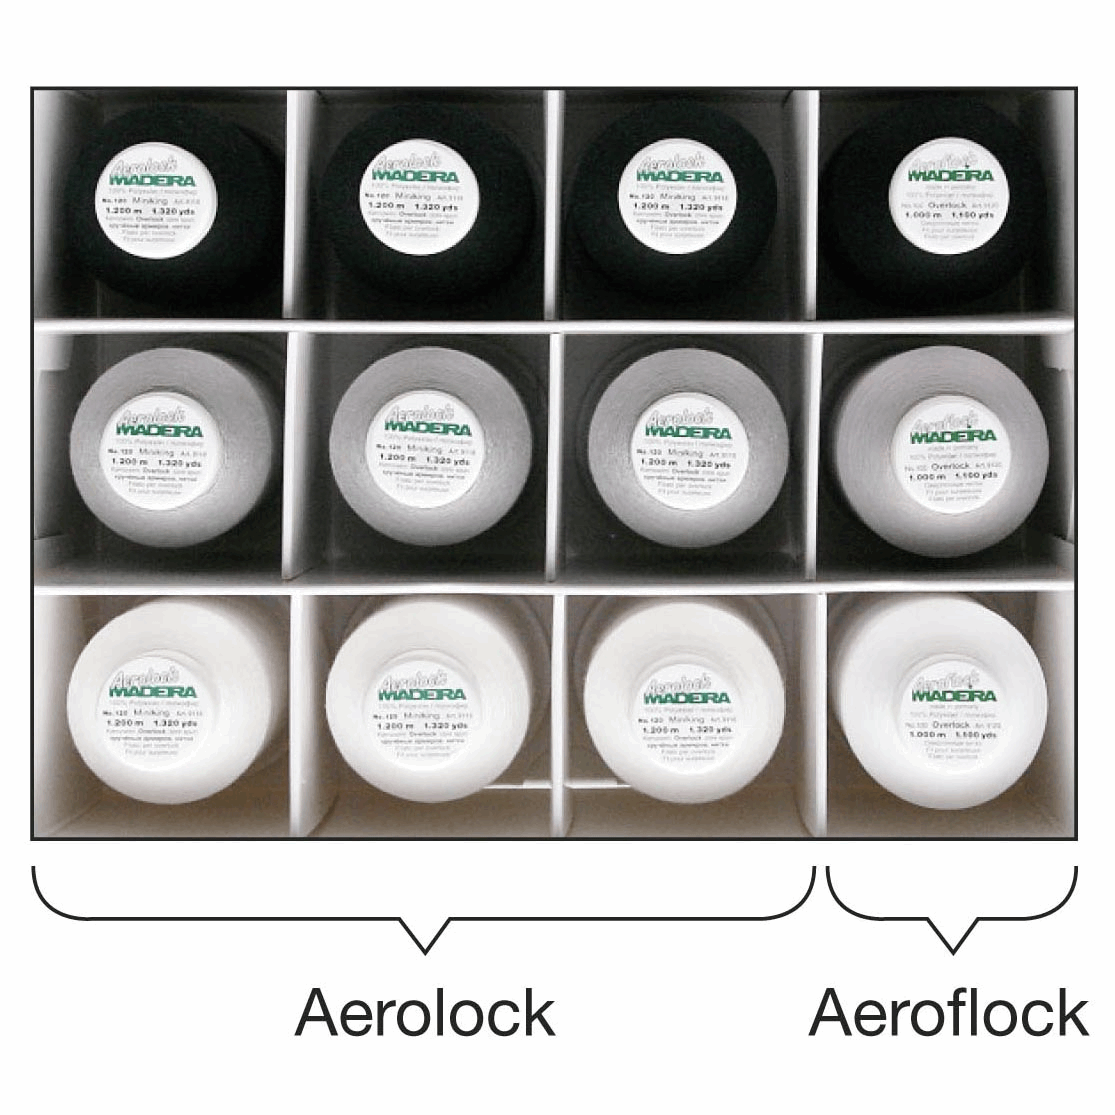 Black Aerolock and Aeroflock